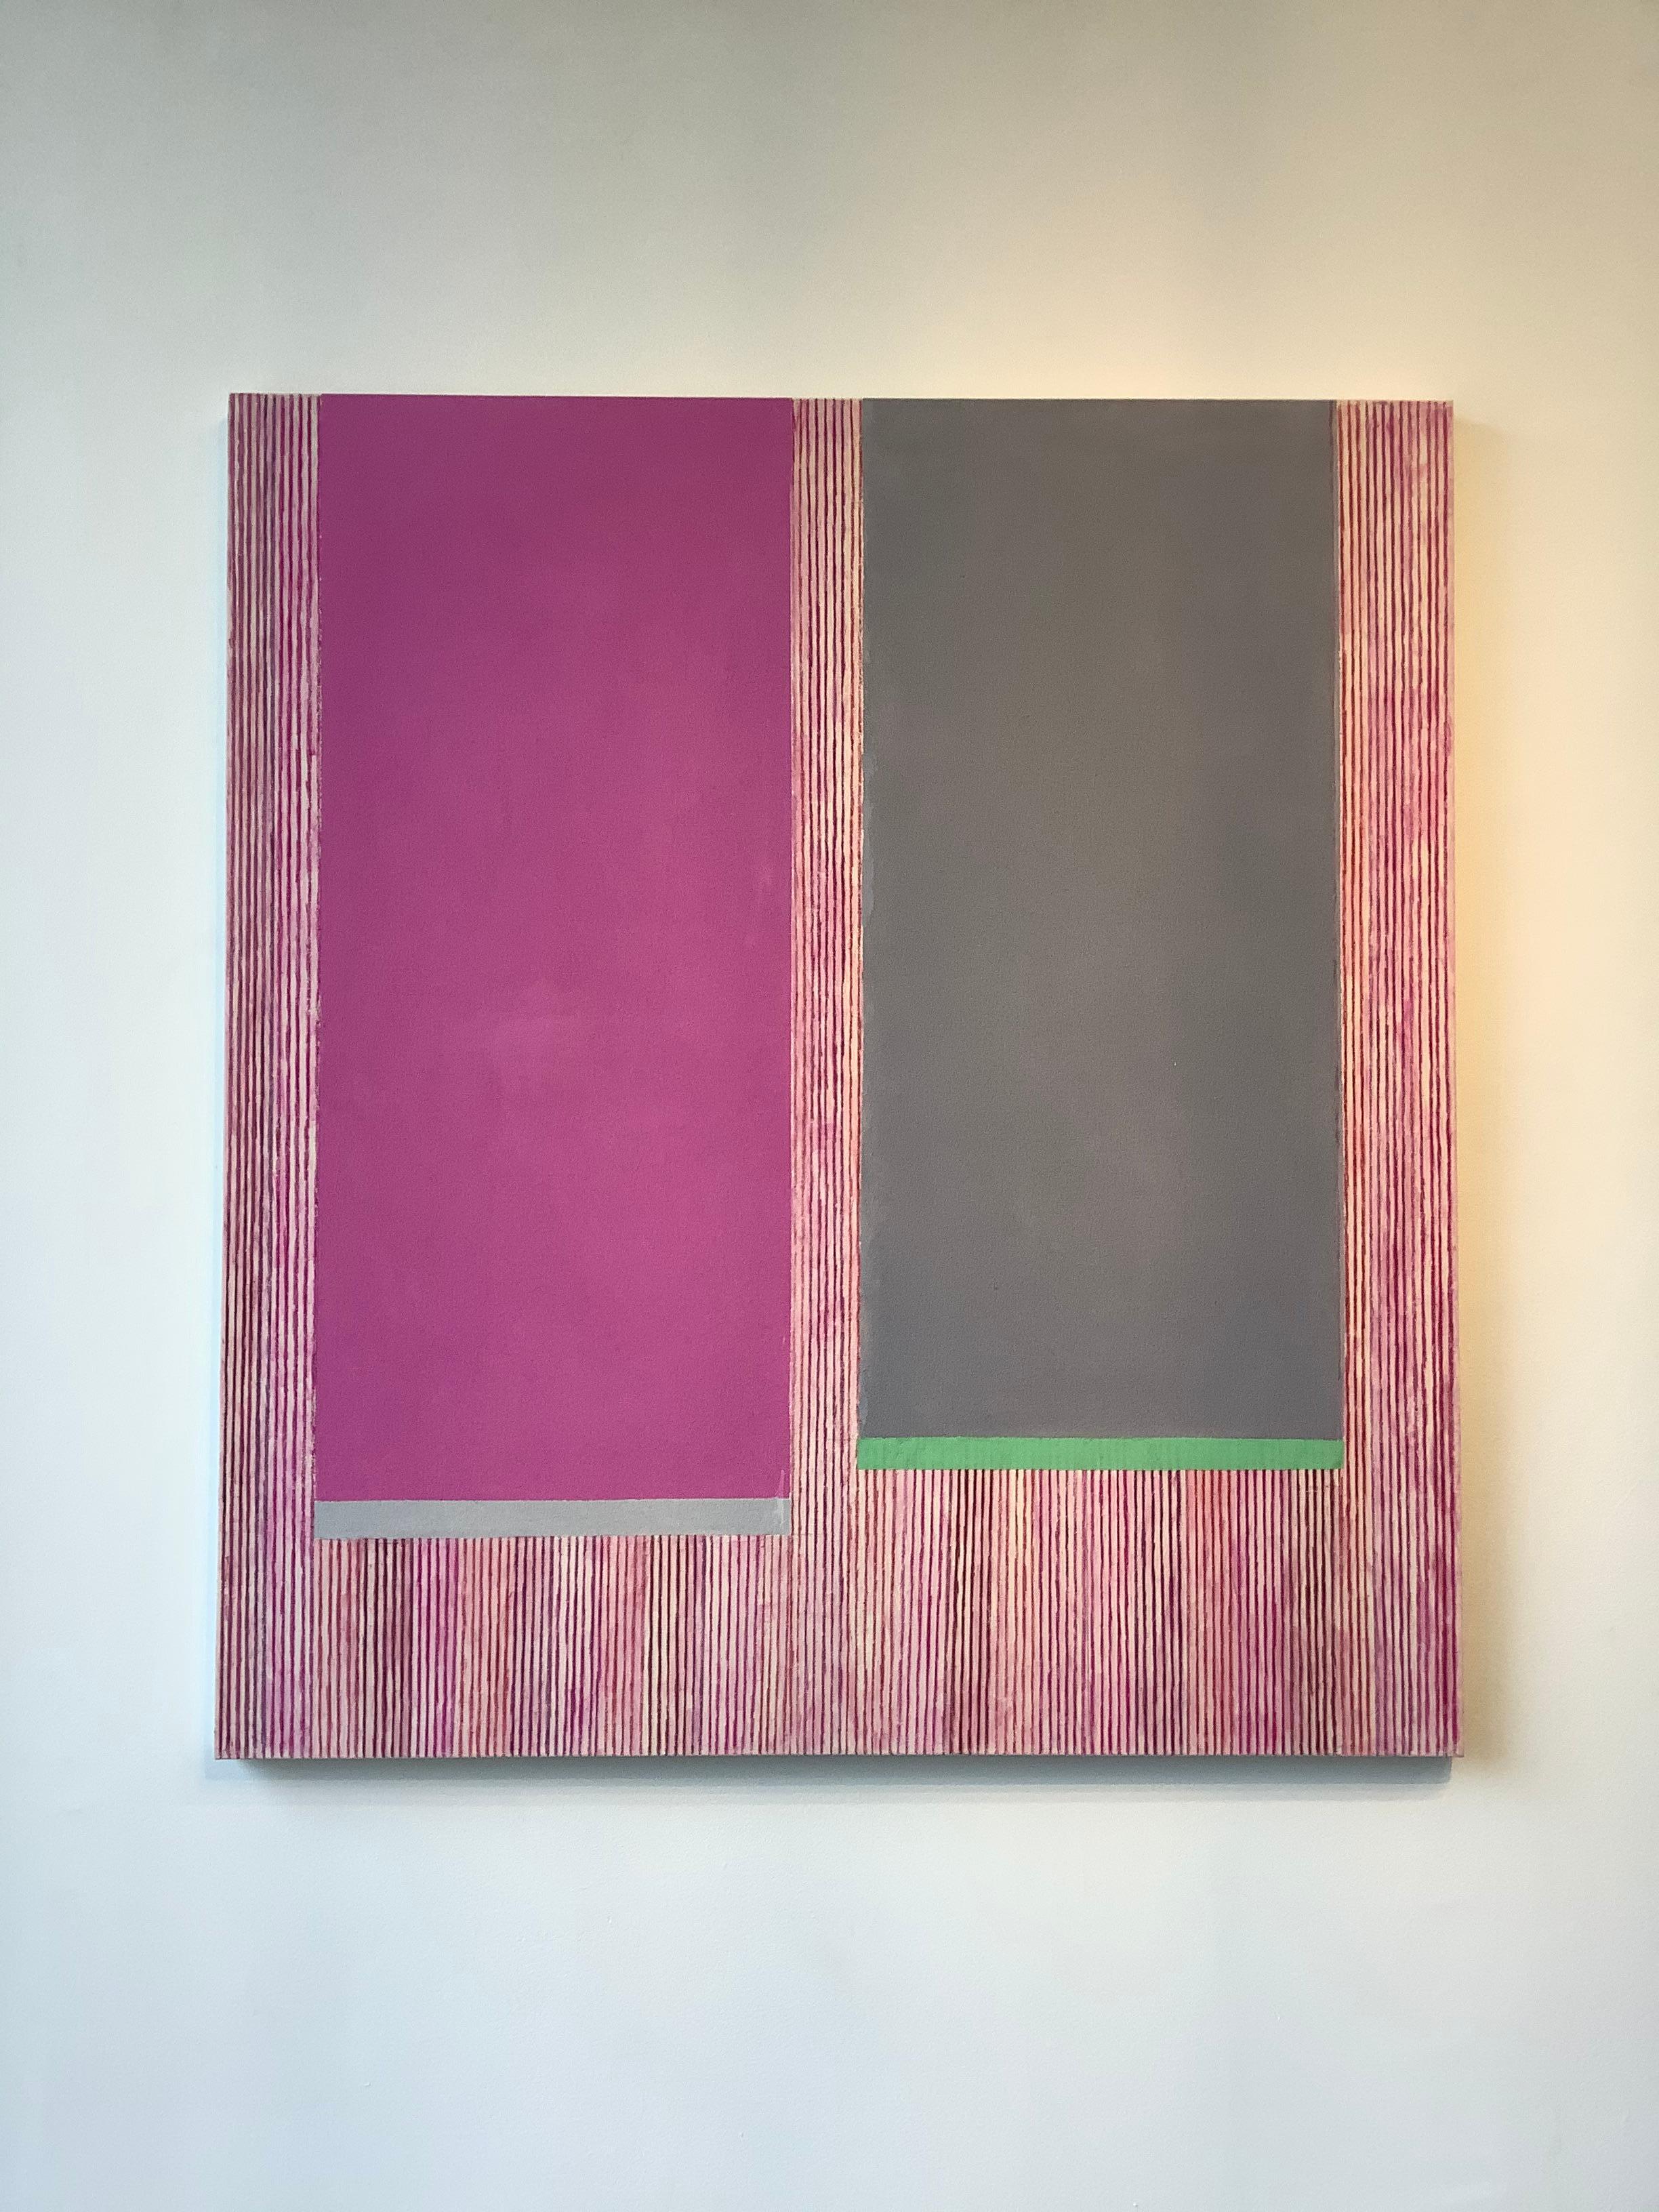 Geometrisches abstraktes Gemälde in Magentagrau B, Rosa, Grau, Grün, Rot gestreift – Painting von Elizabeth Gourlay